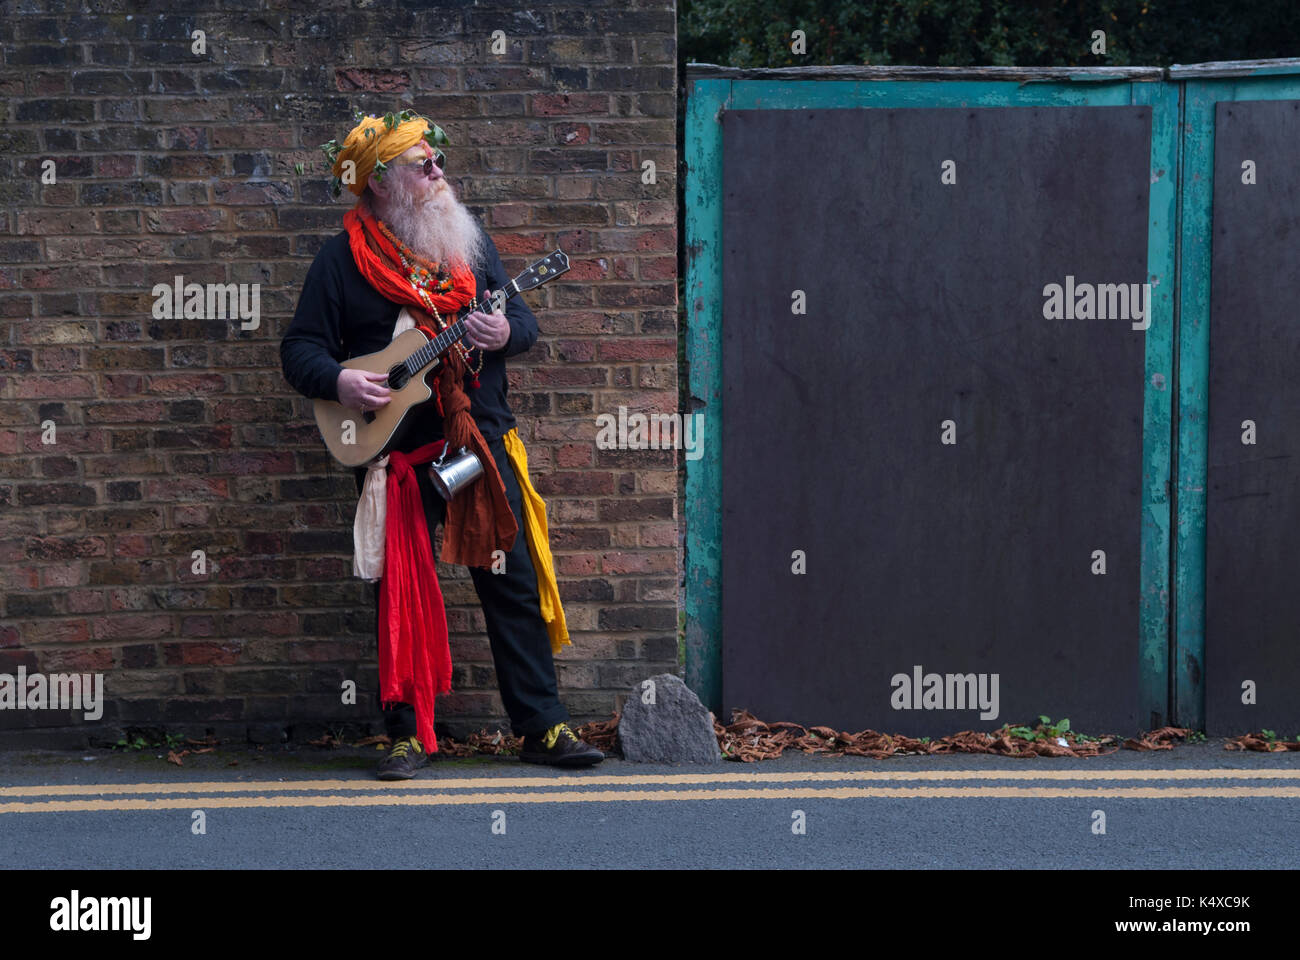 New age hippy, un retraité de vieillesse, vieux errant Minstrel, s'amusant Carshalton Surrey. South London UK Angleterre des années 2017 2010 HOMER SYKES Banque D'Images